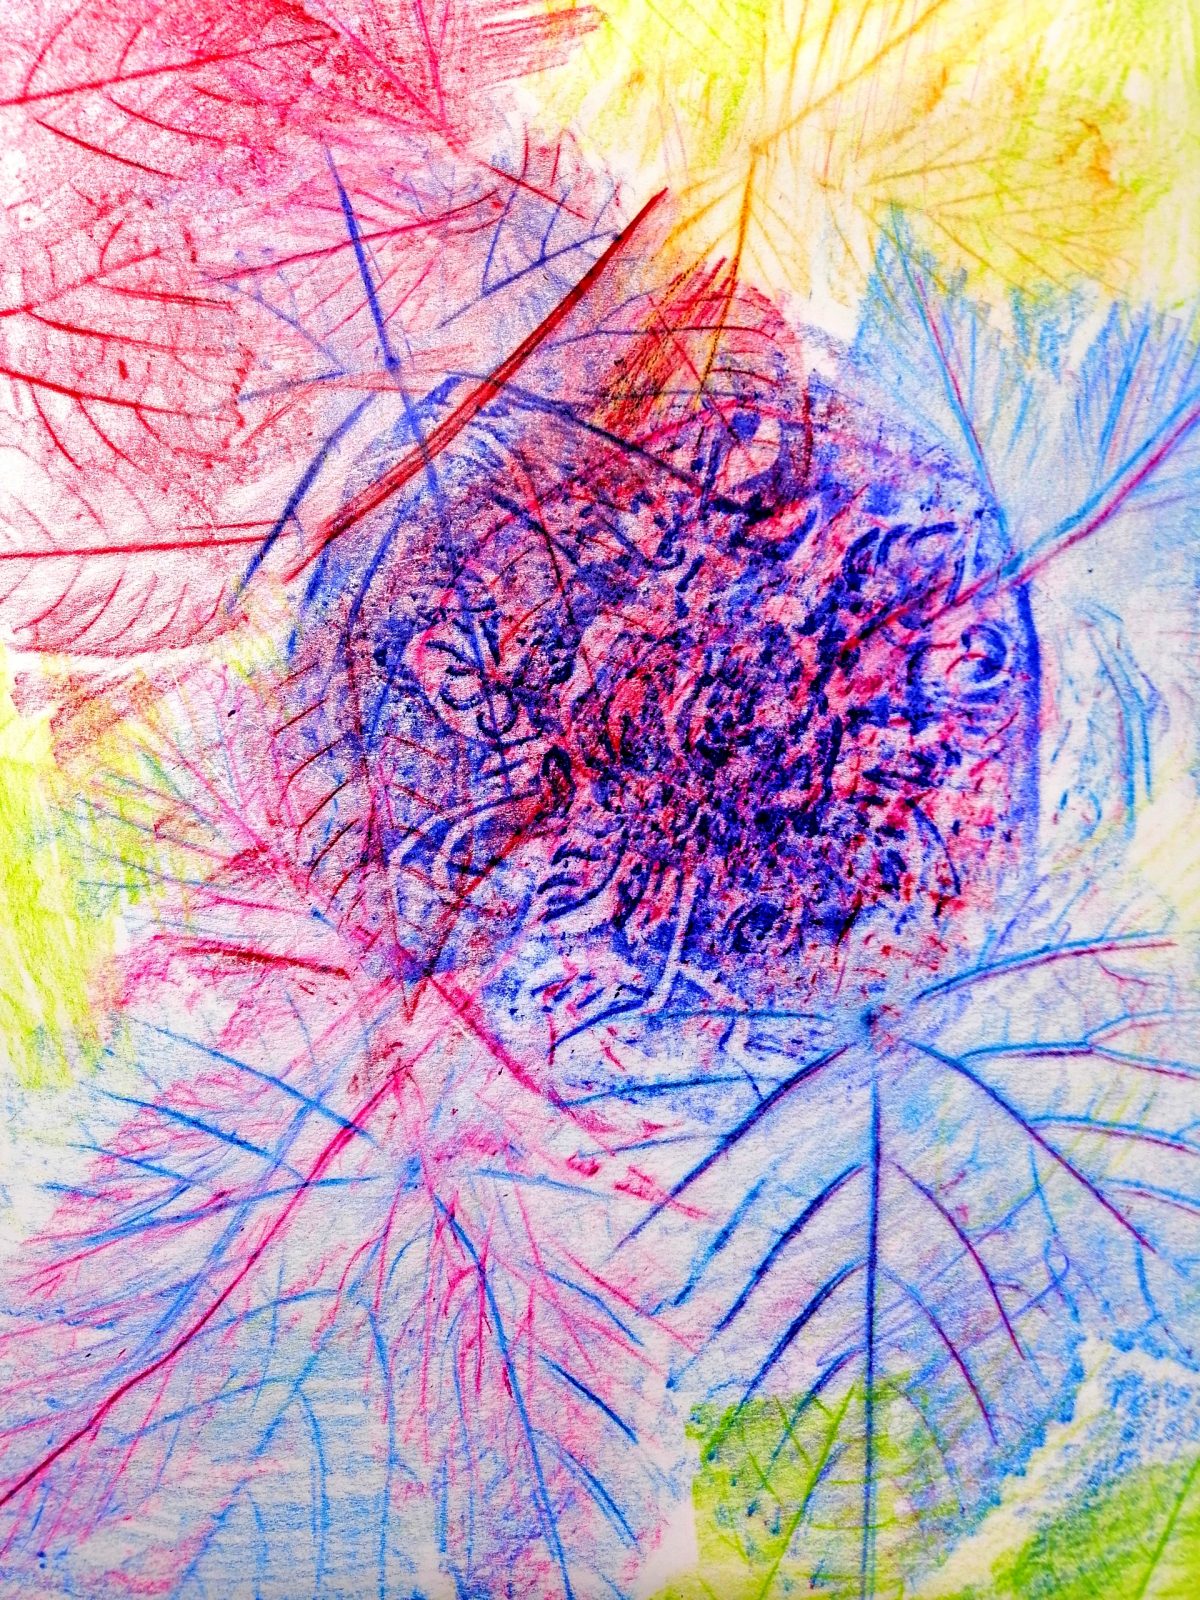 Kompozycja plastyczna struktur kilku jesiennych liści w układzie centralnym. Praca wykonana w technice frotażu z użyciem barw ciepłych i zimnych.